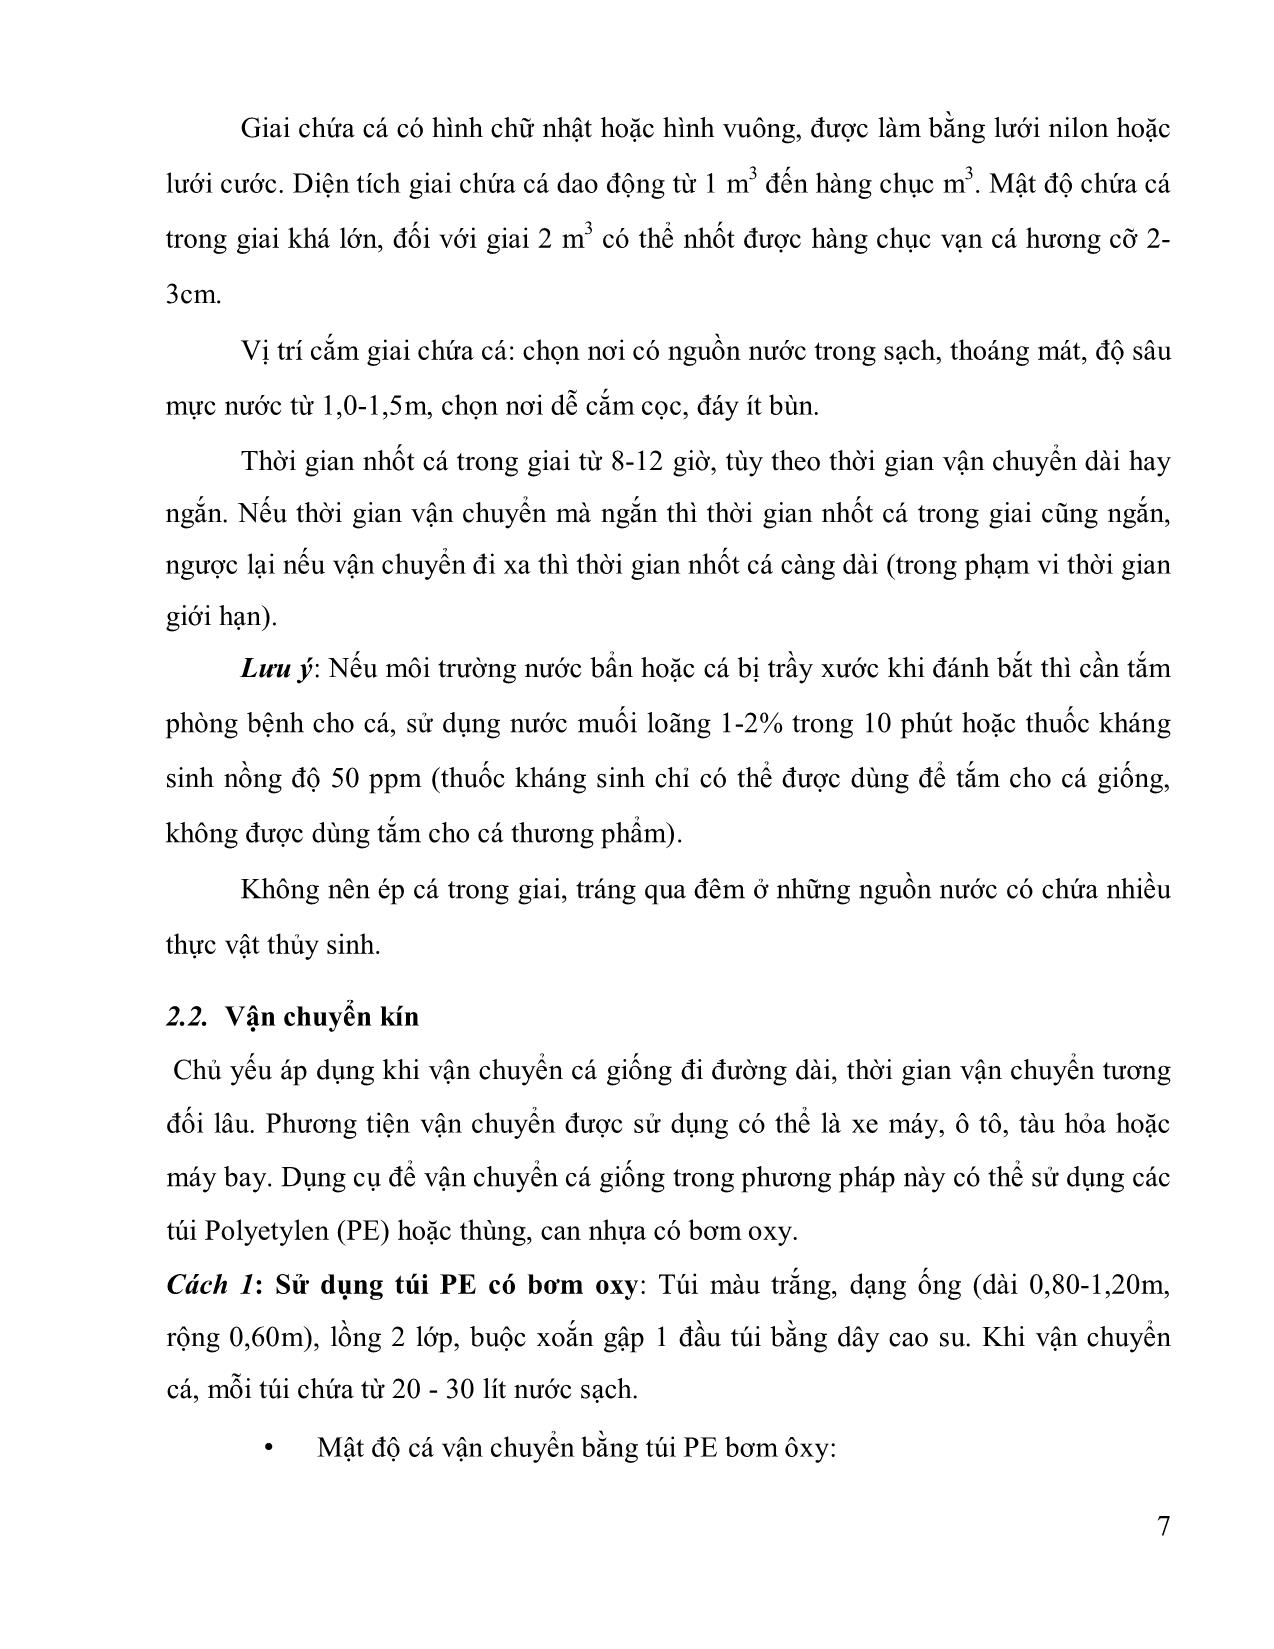 Bài giảng Vận chuyển động vật thủy sản trang 7